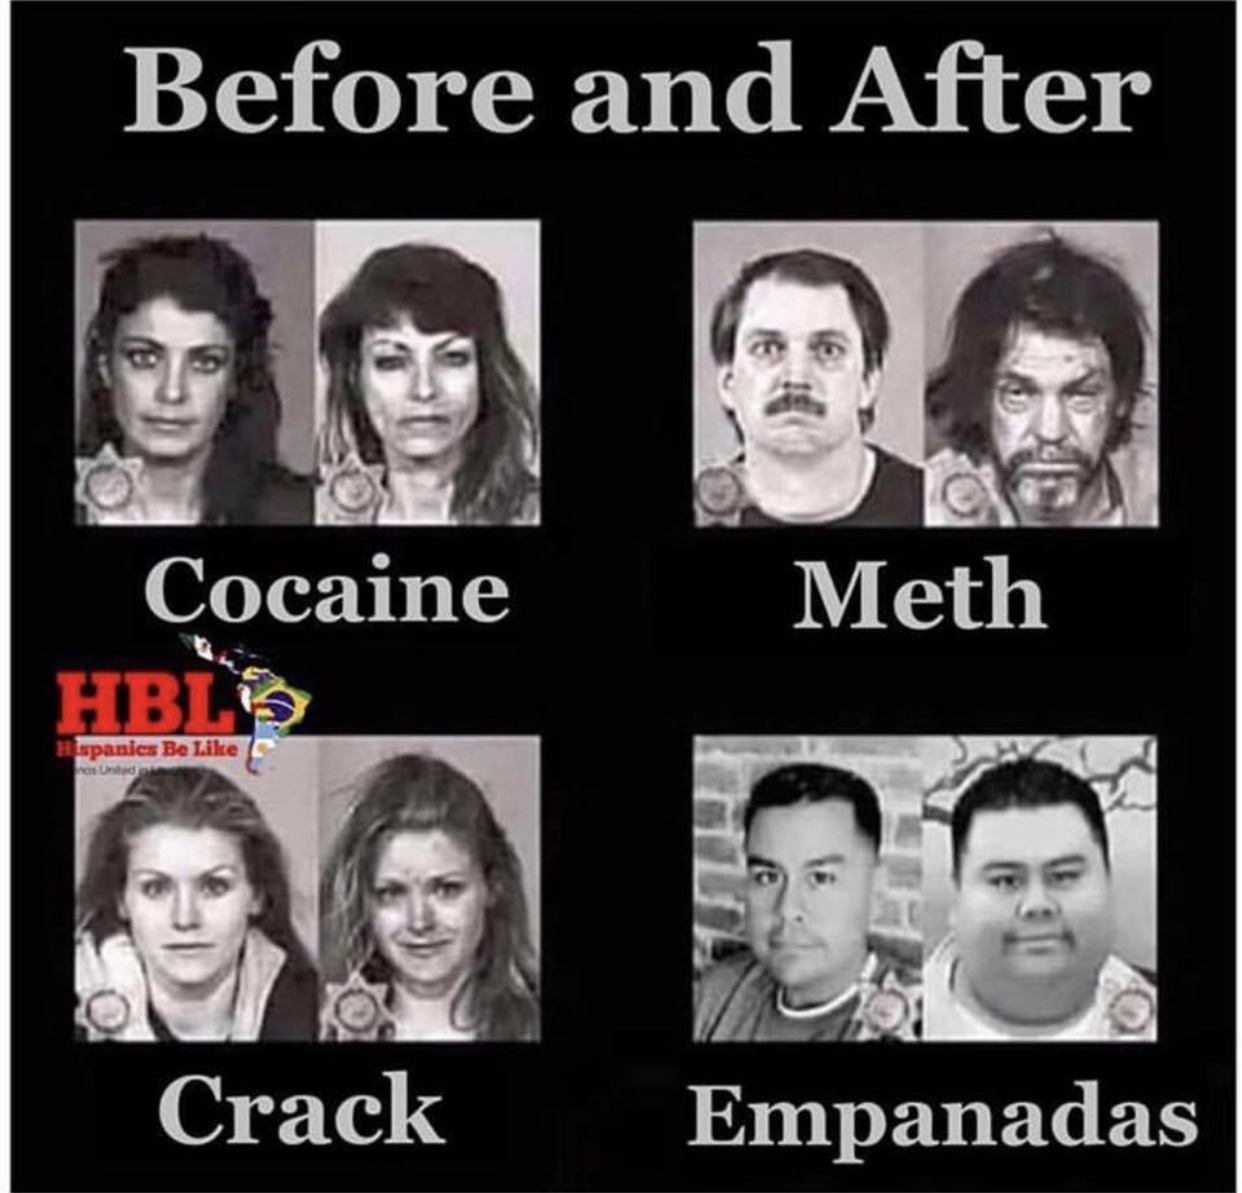 memes - monasterio benedictino de santa maría, fuente de irache - Before and After Meth Cocaine Hble spanies Be has Unted Crack Empanadas